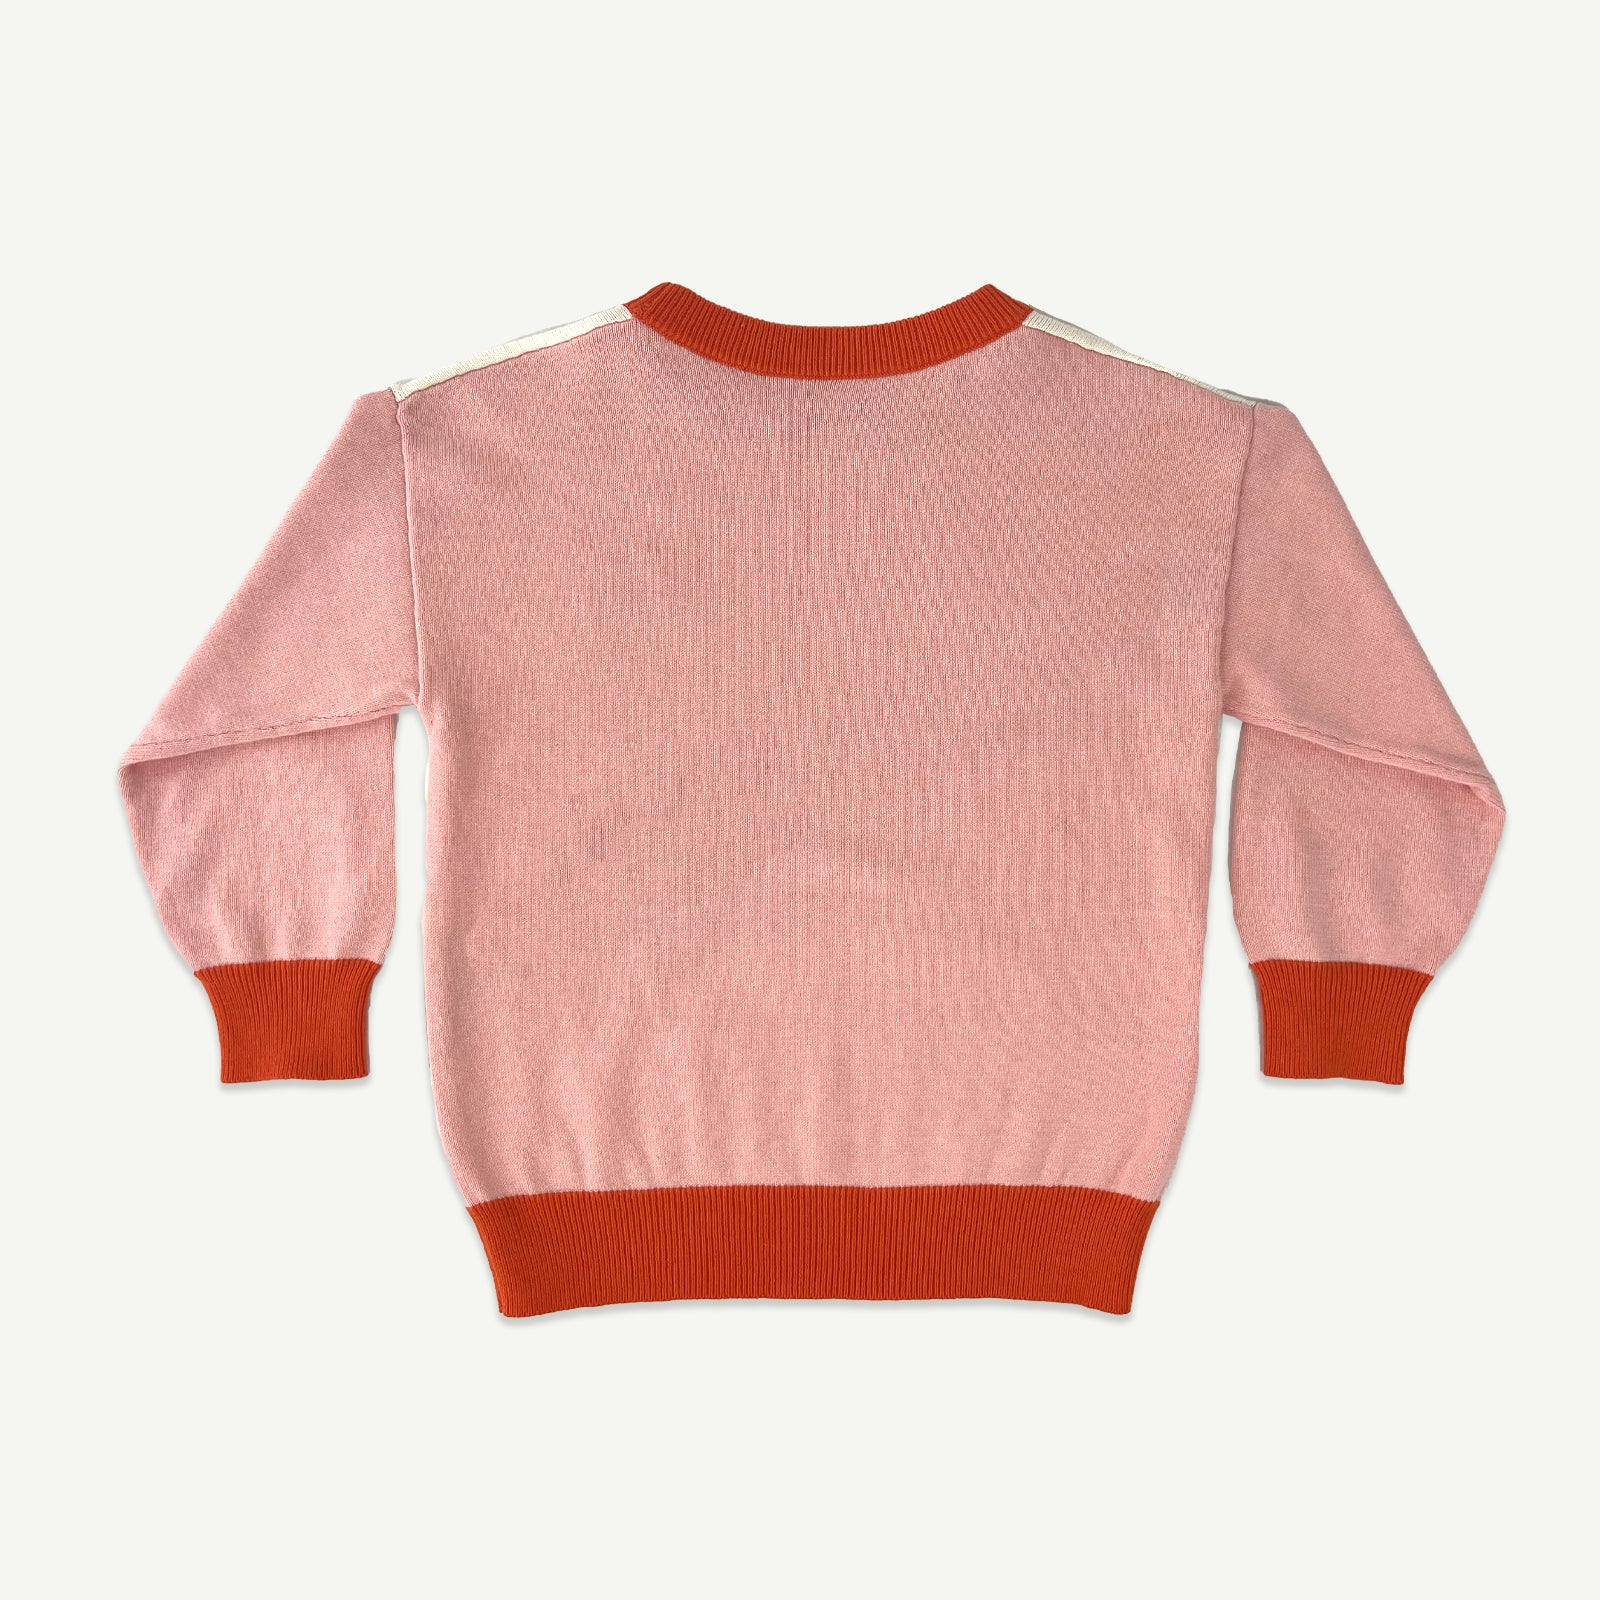 Rad Team Kids Organic Cotton Knit Jumper - Pink